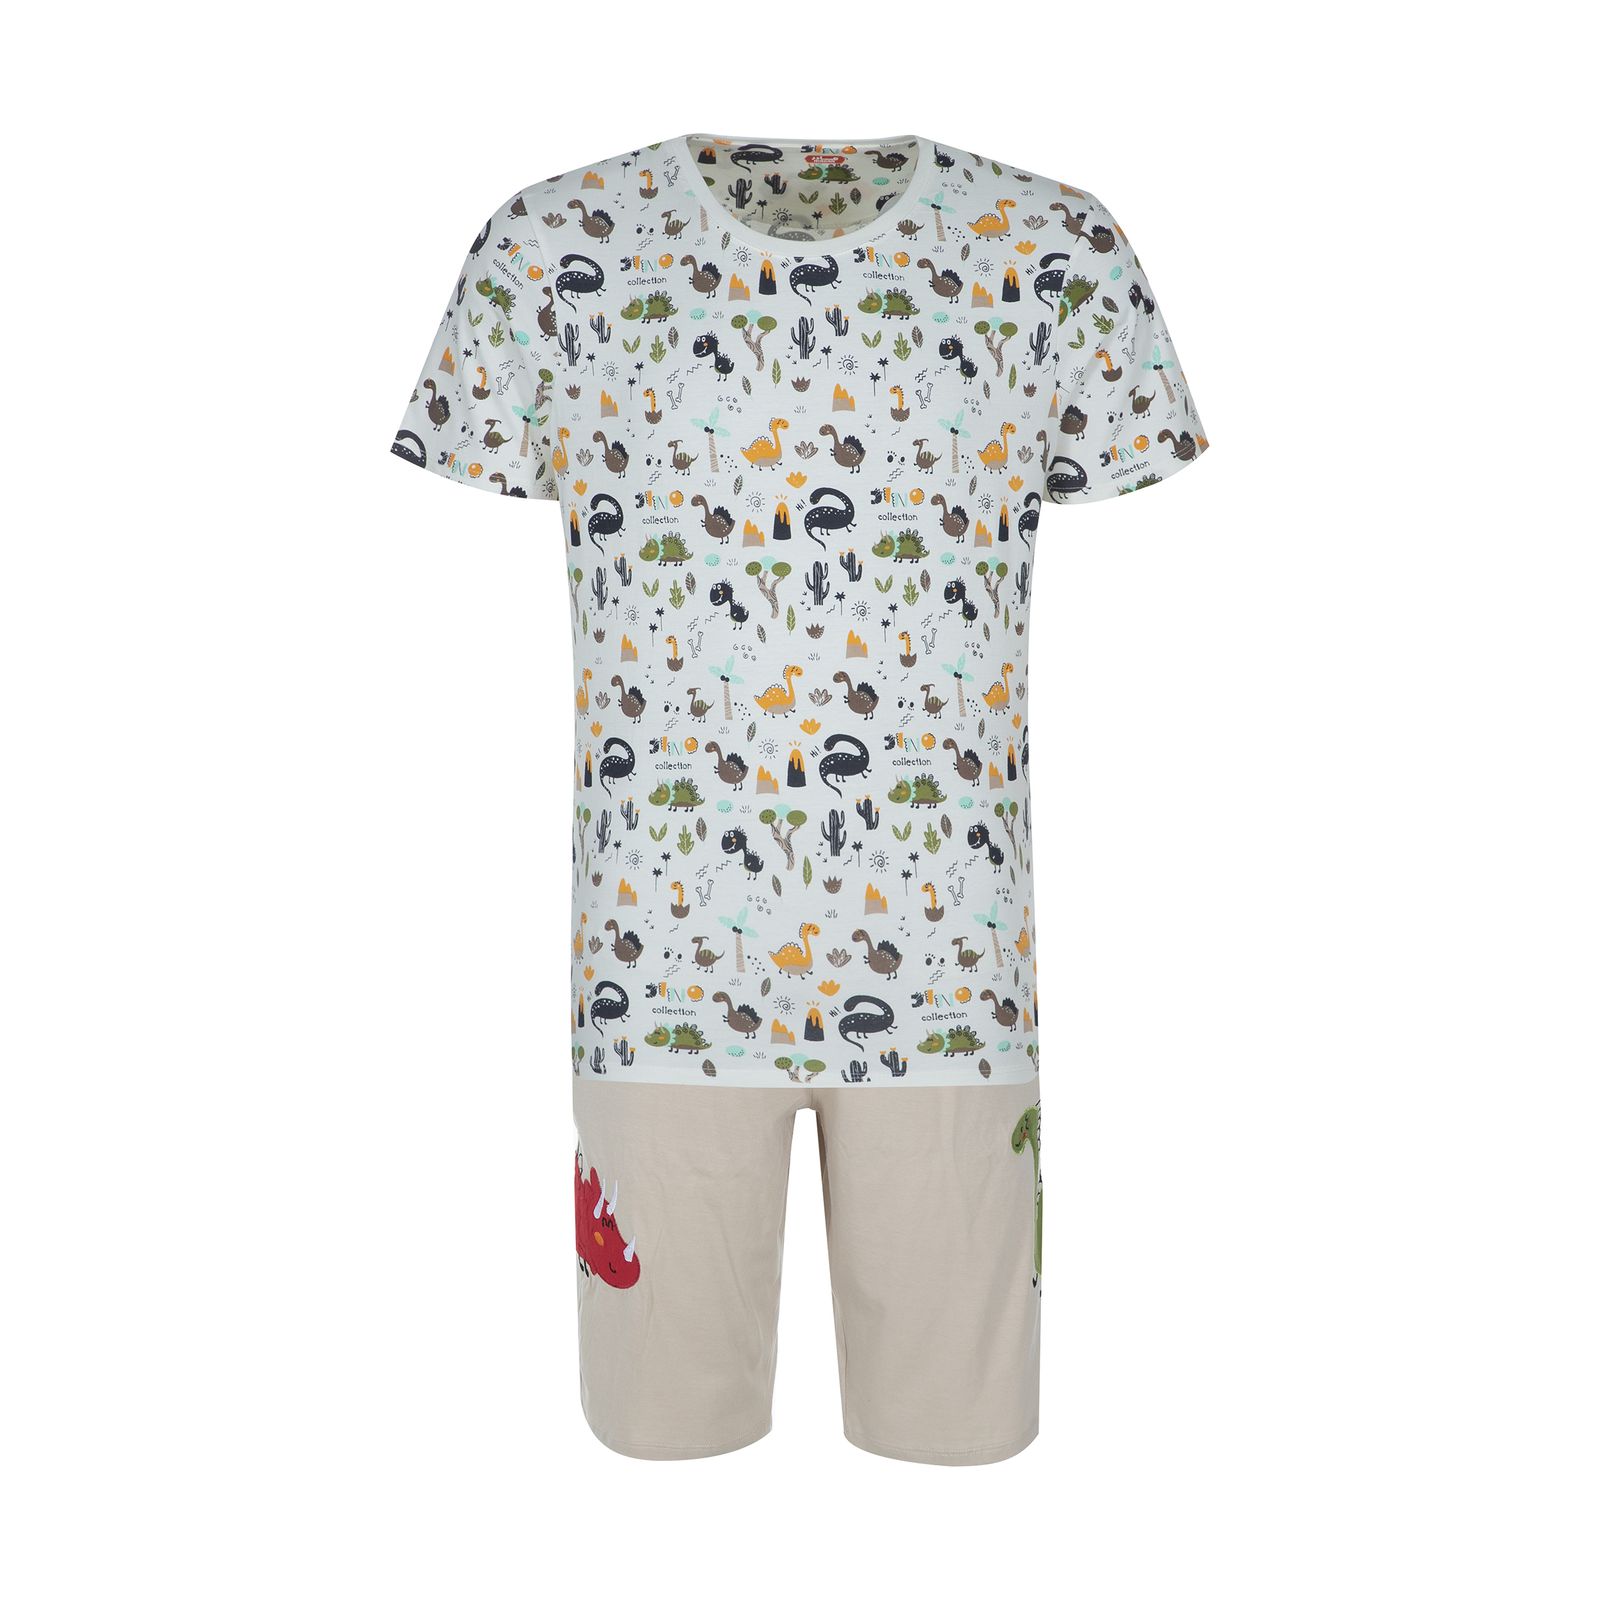 ست تی شرت و شلوارک راحتی مردانه مادر مدل 2041110-07 -  - 1